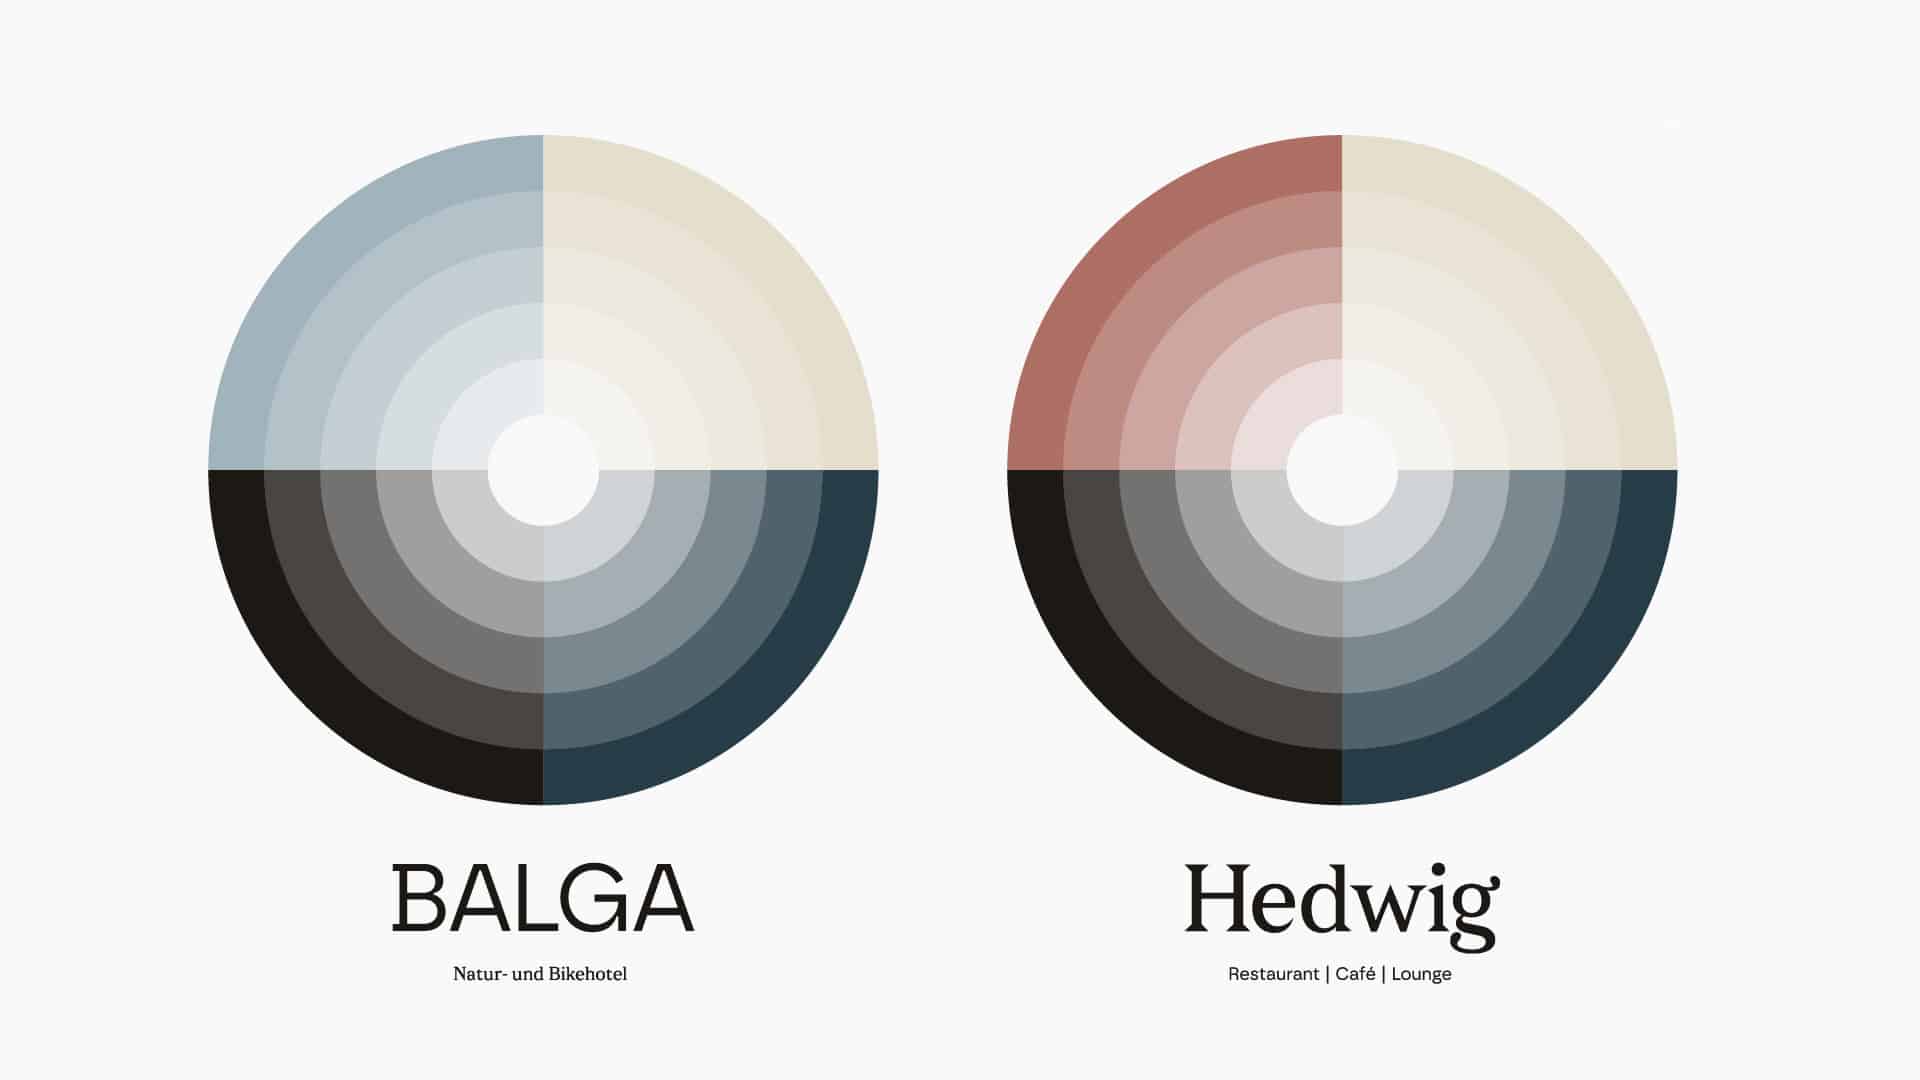 Case-Balga-Hedwig-04